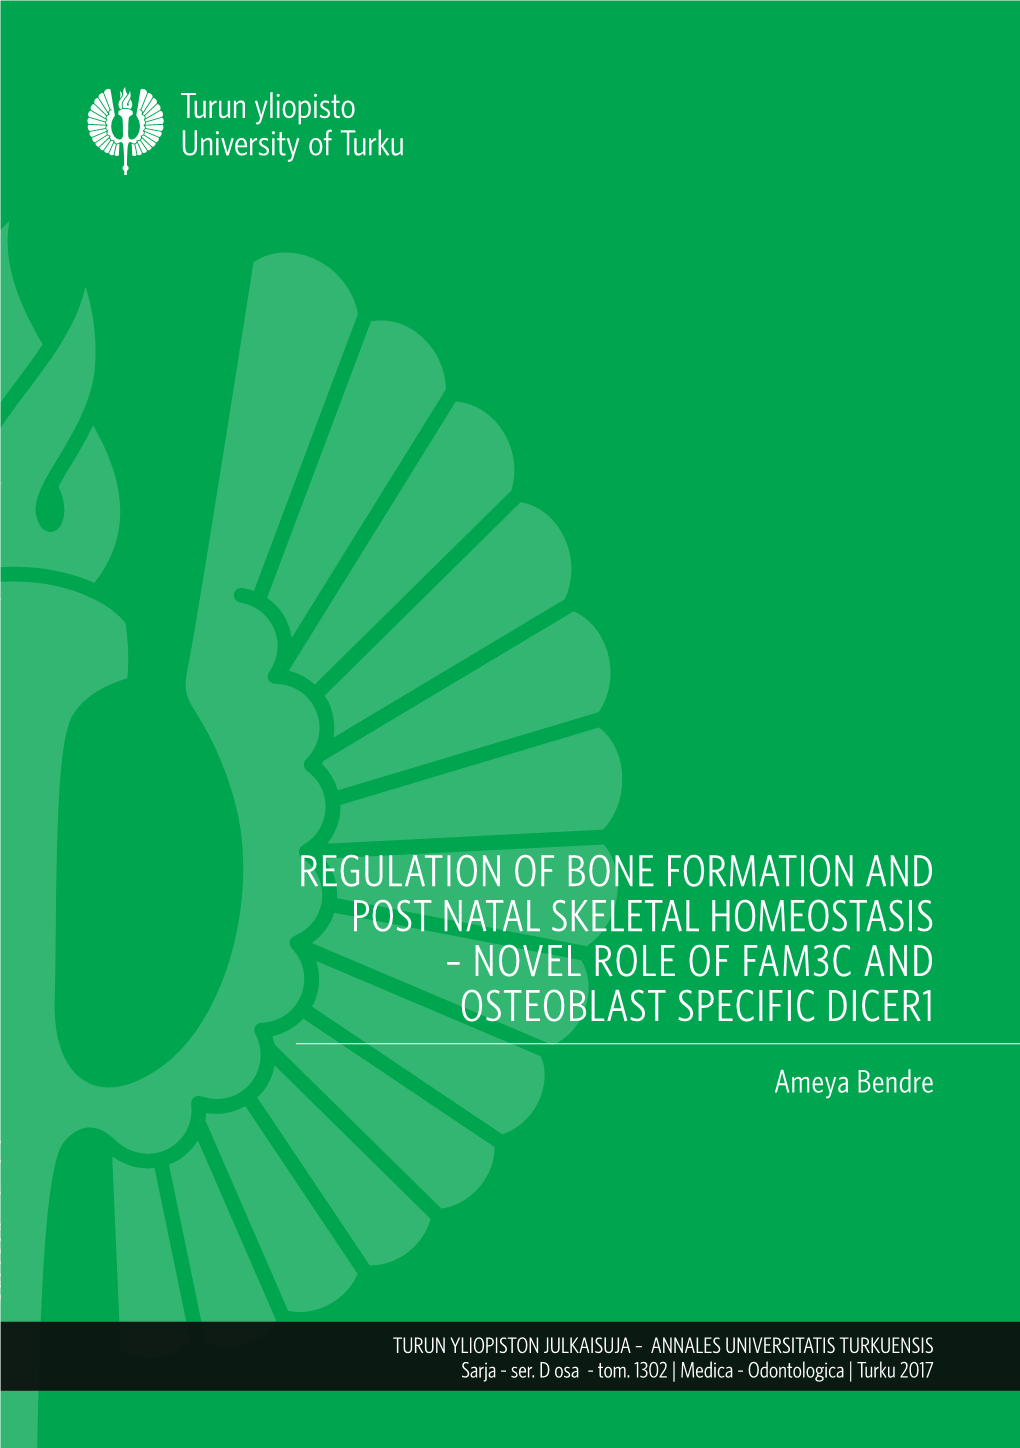 Ameya Bendre – Regulation of Bone Formation and Post-Natal Skeletal